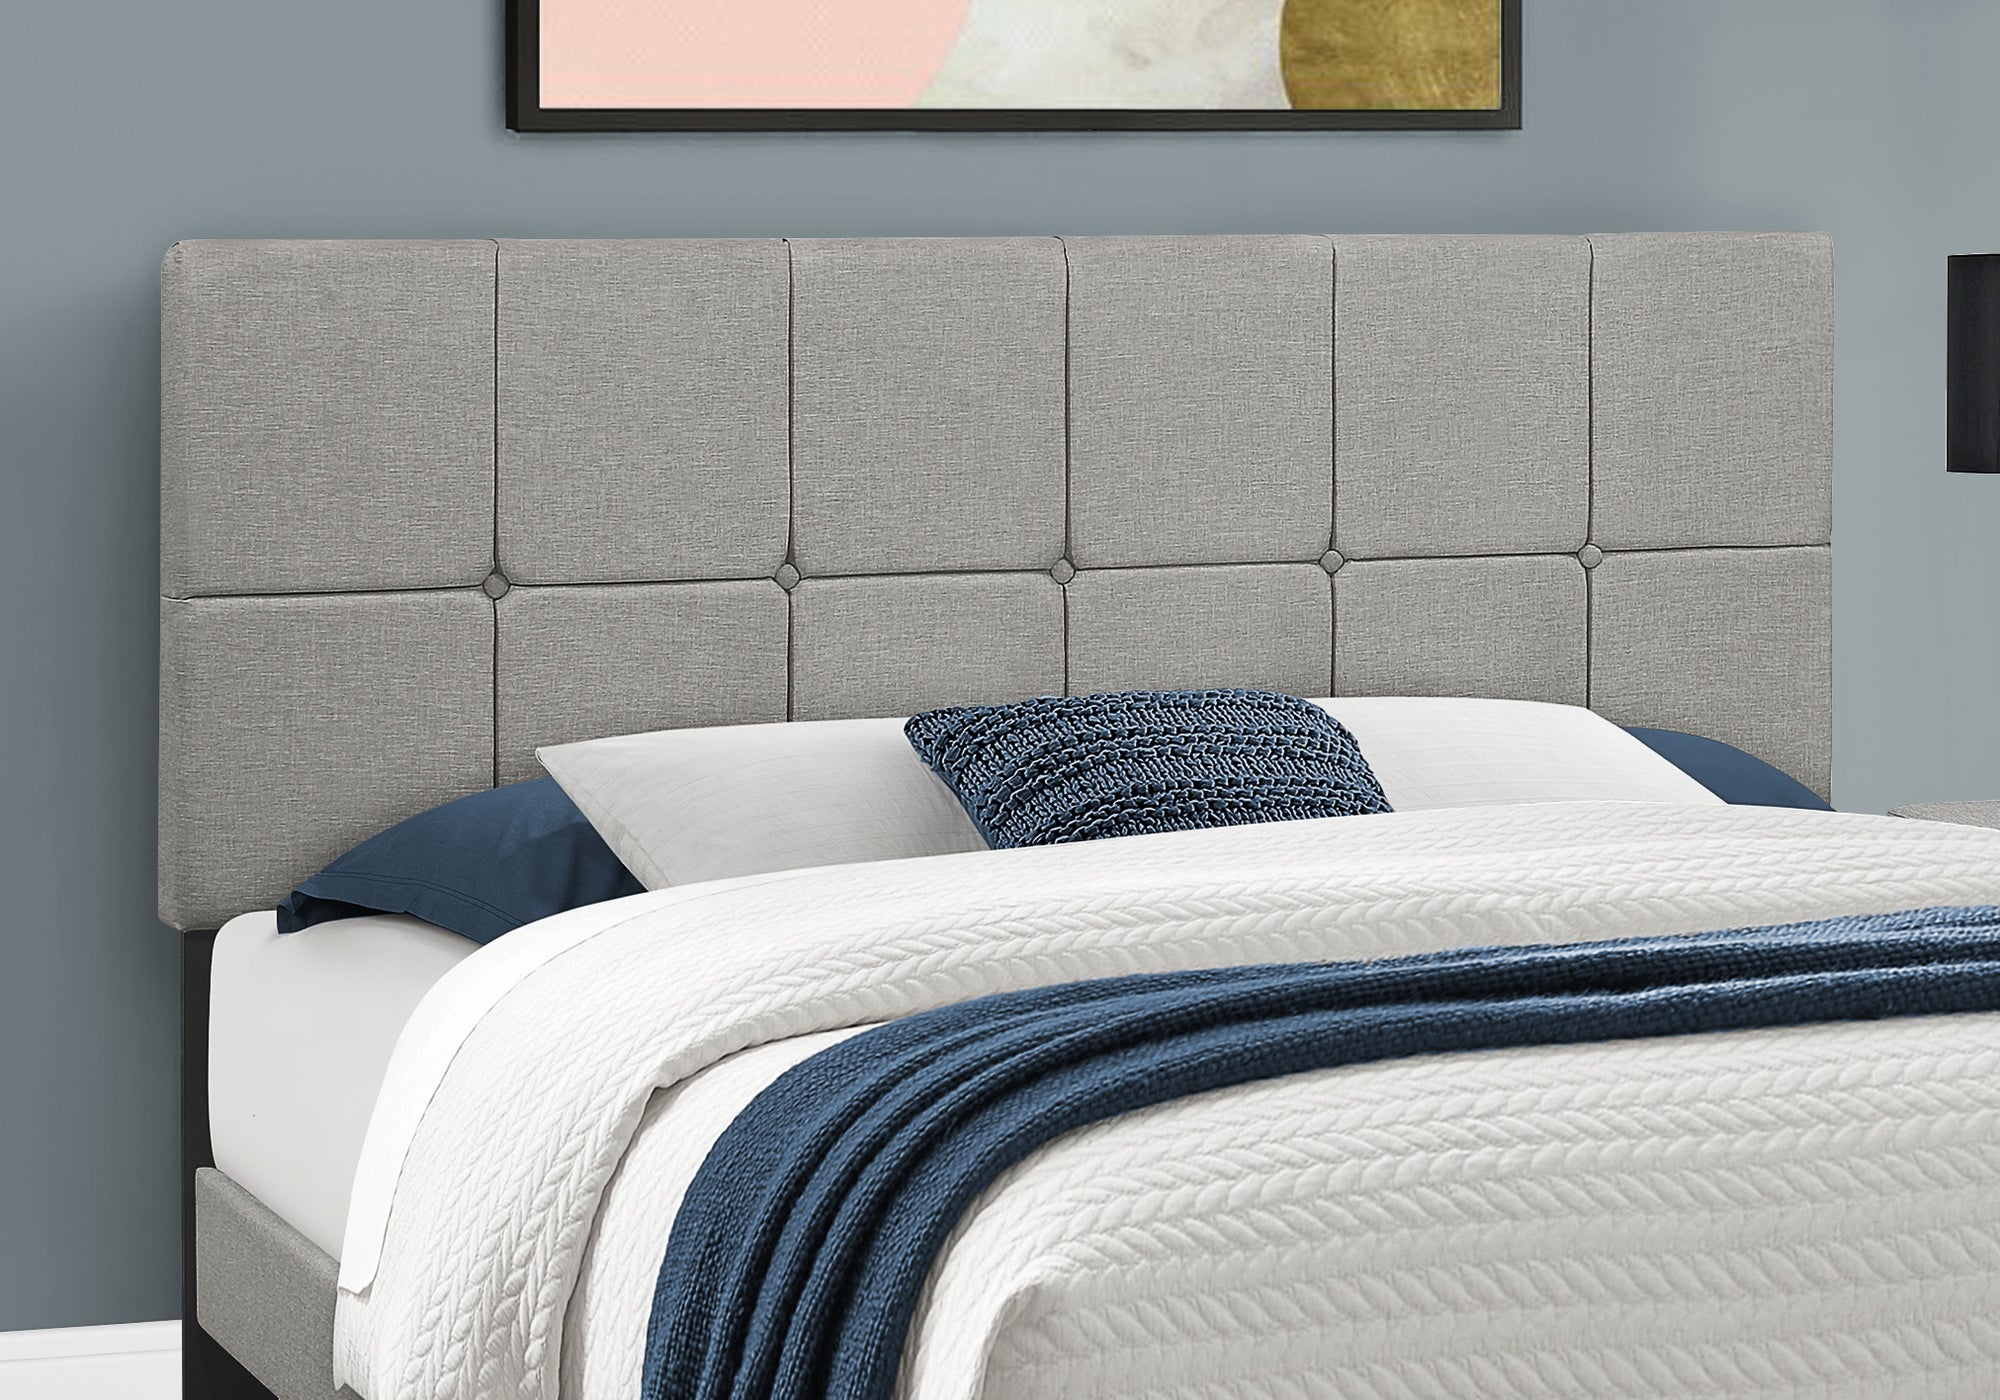 Bed - Queen Size / Grey Linen